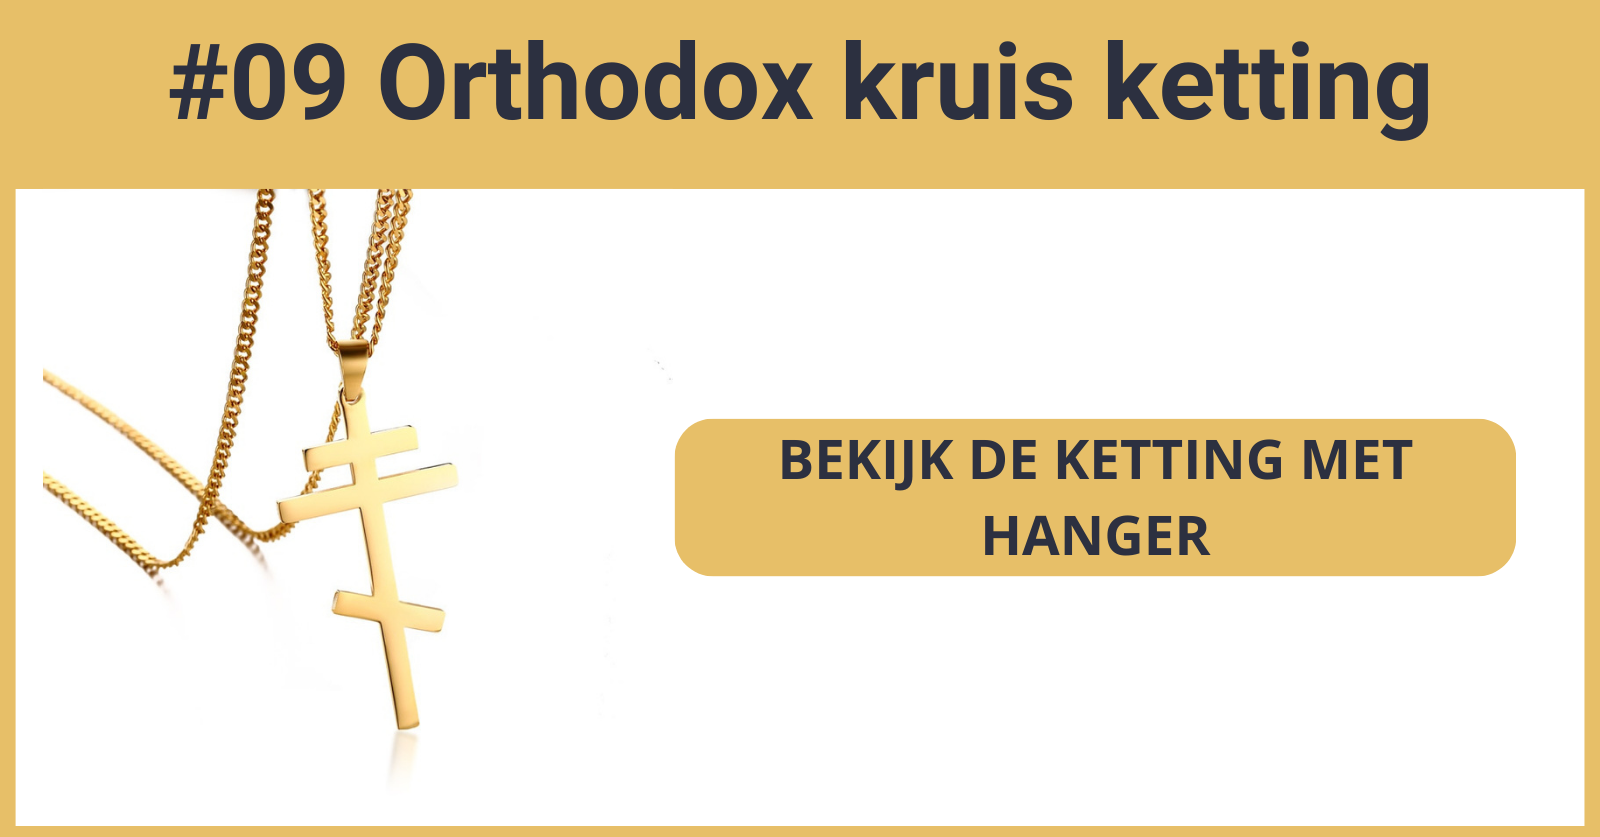 Orthodox kruis ketting